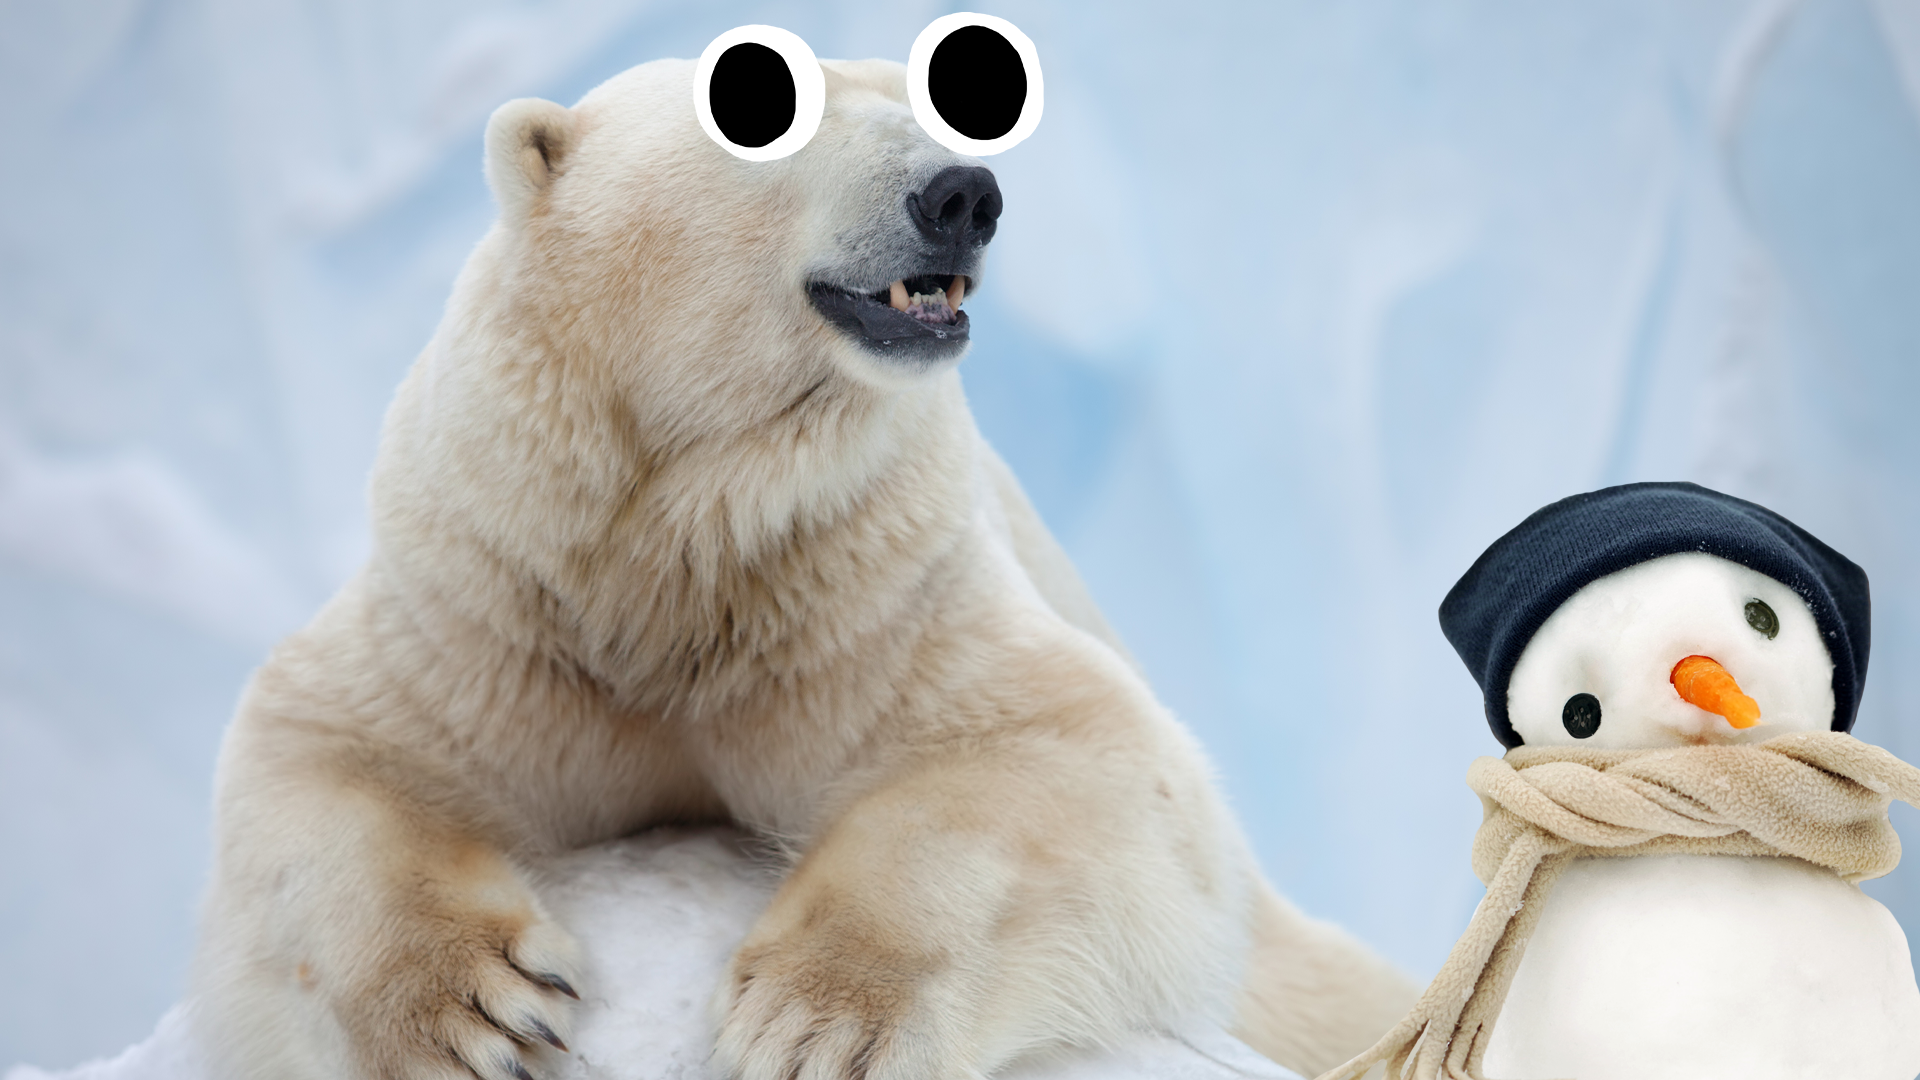 Polar bear with derpy snowman